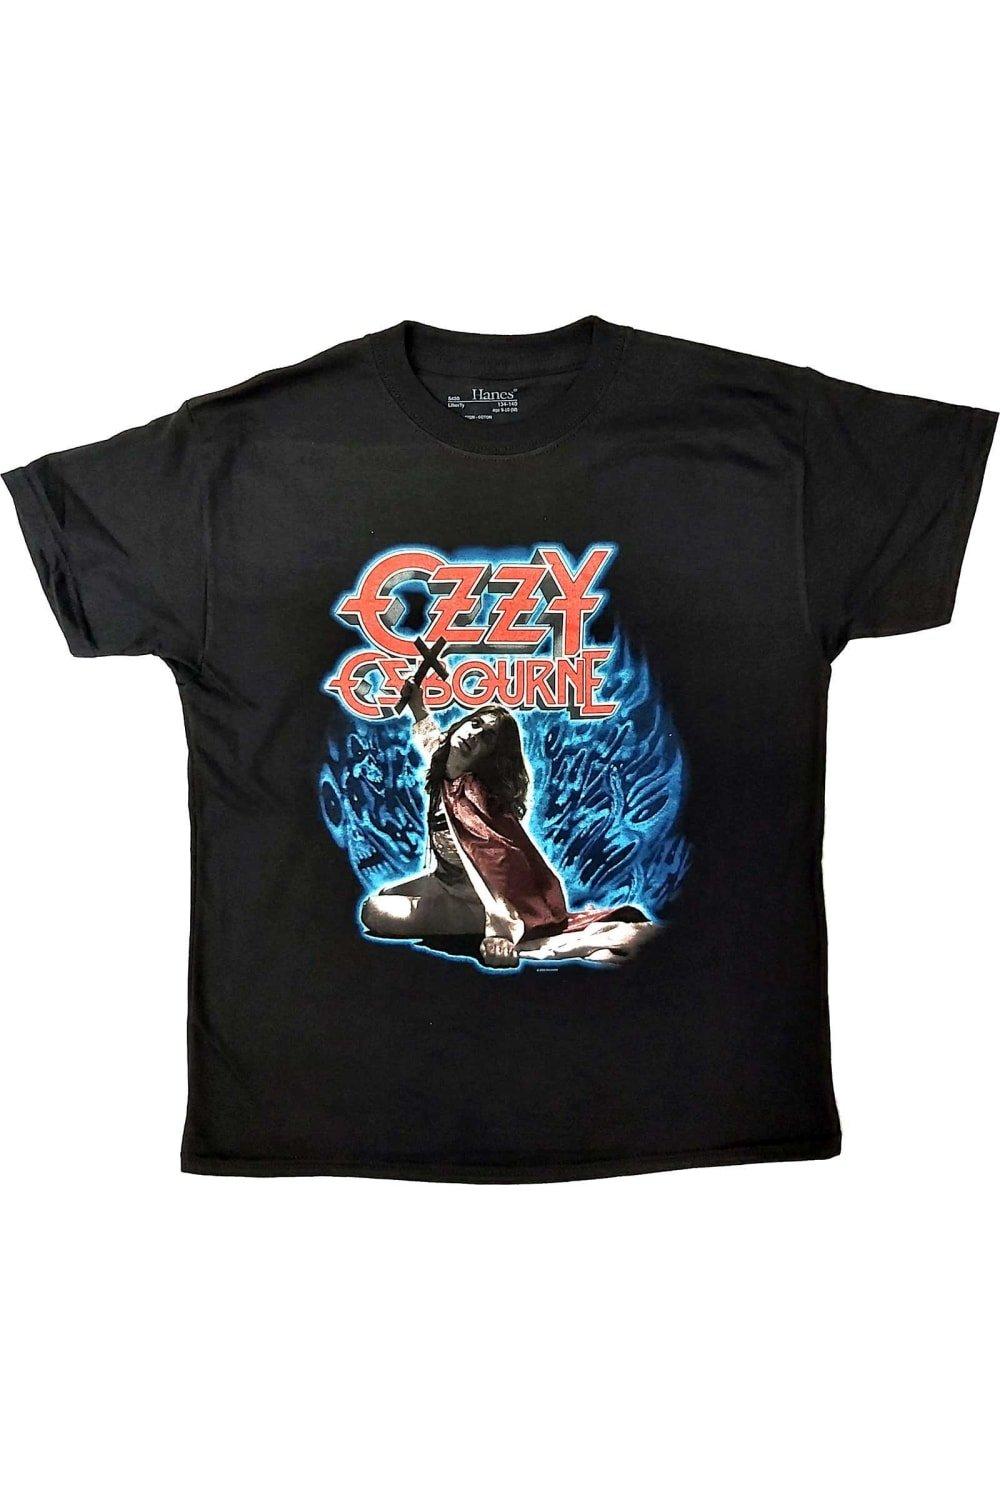 Хлопковая футболка Blizzard Of Ozz Ozzy Osbourne, черный osbourne ozzy blizzard of ozz original recording remastered lp конверты внутренние coex для грампластинок 12 25шт набор